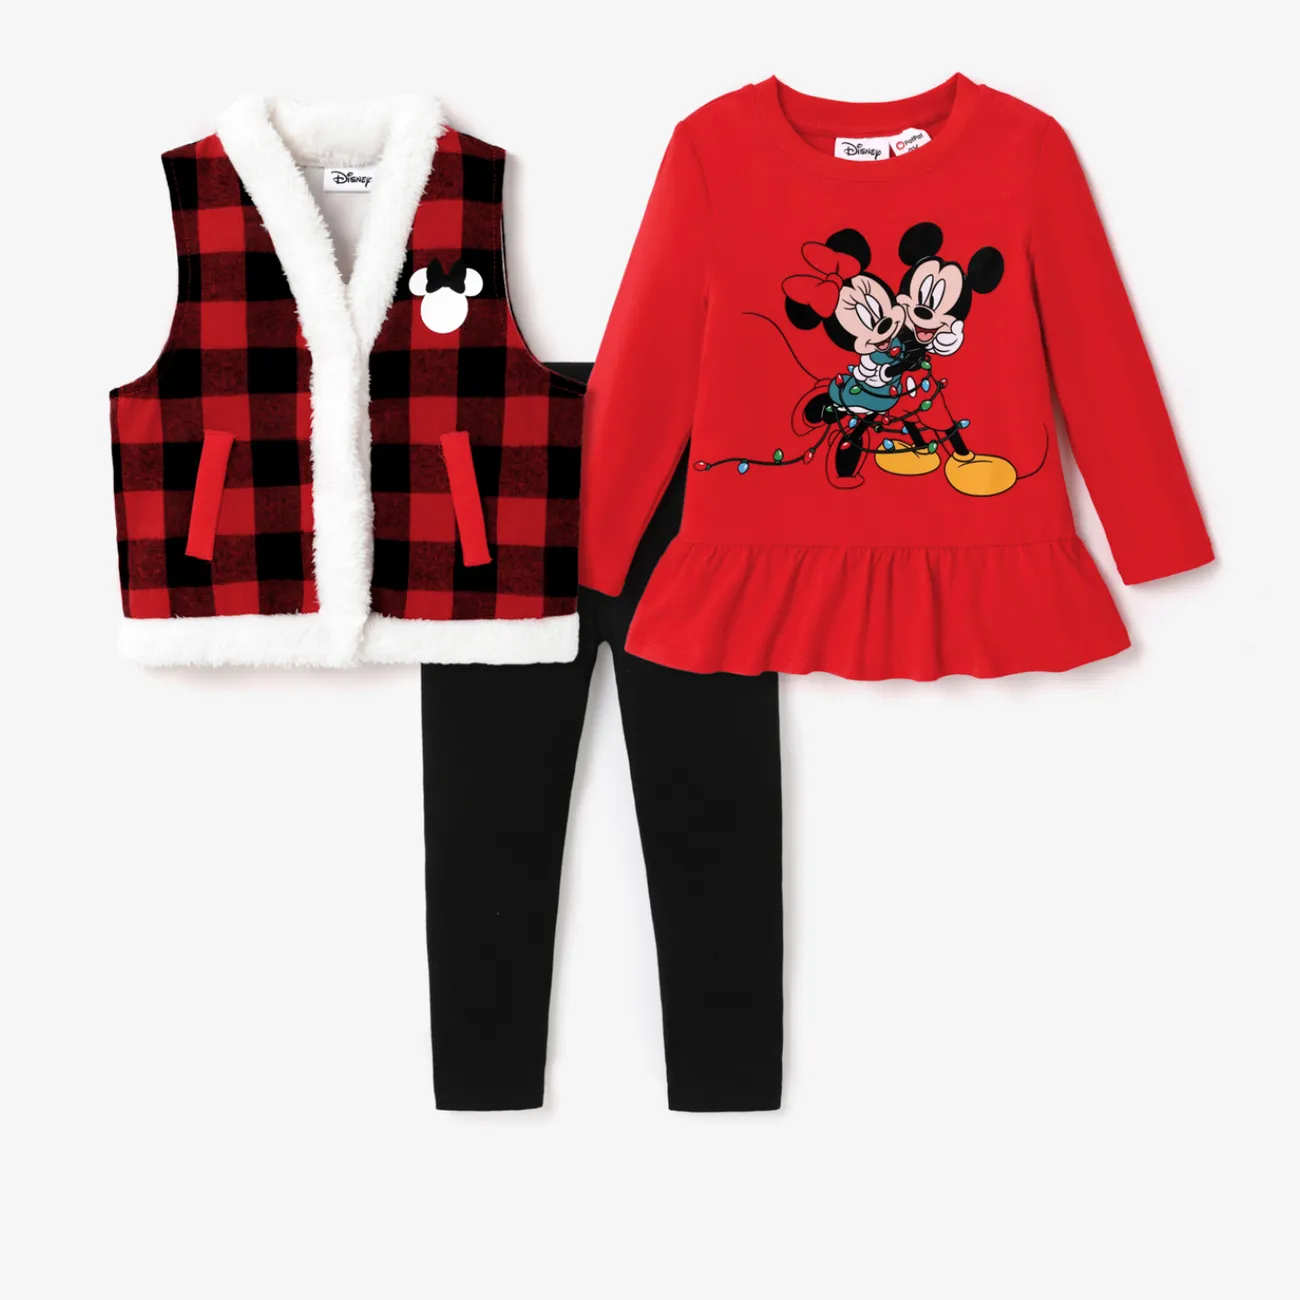 Disney Mickey and Friends Enfant en bas âge Fille Couture de tissus Enfantin ensembles de vestes Noir big image 1